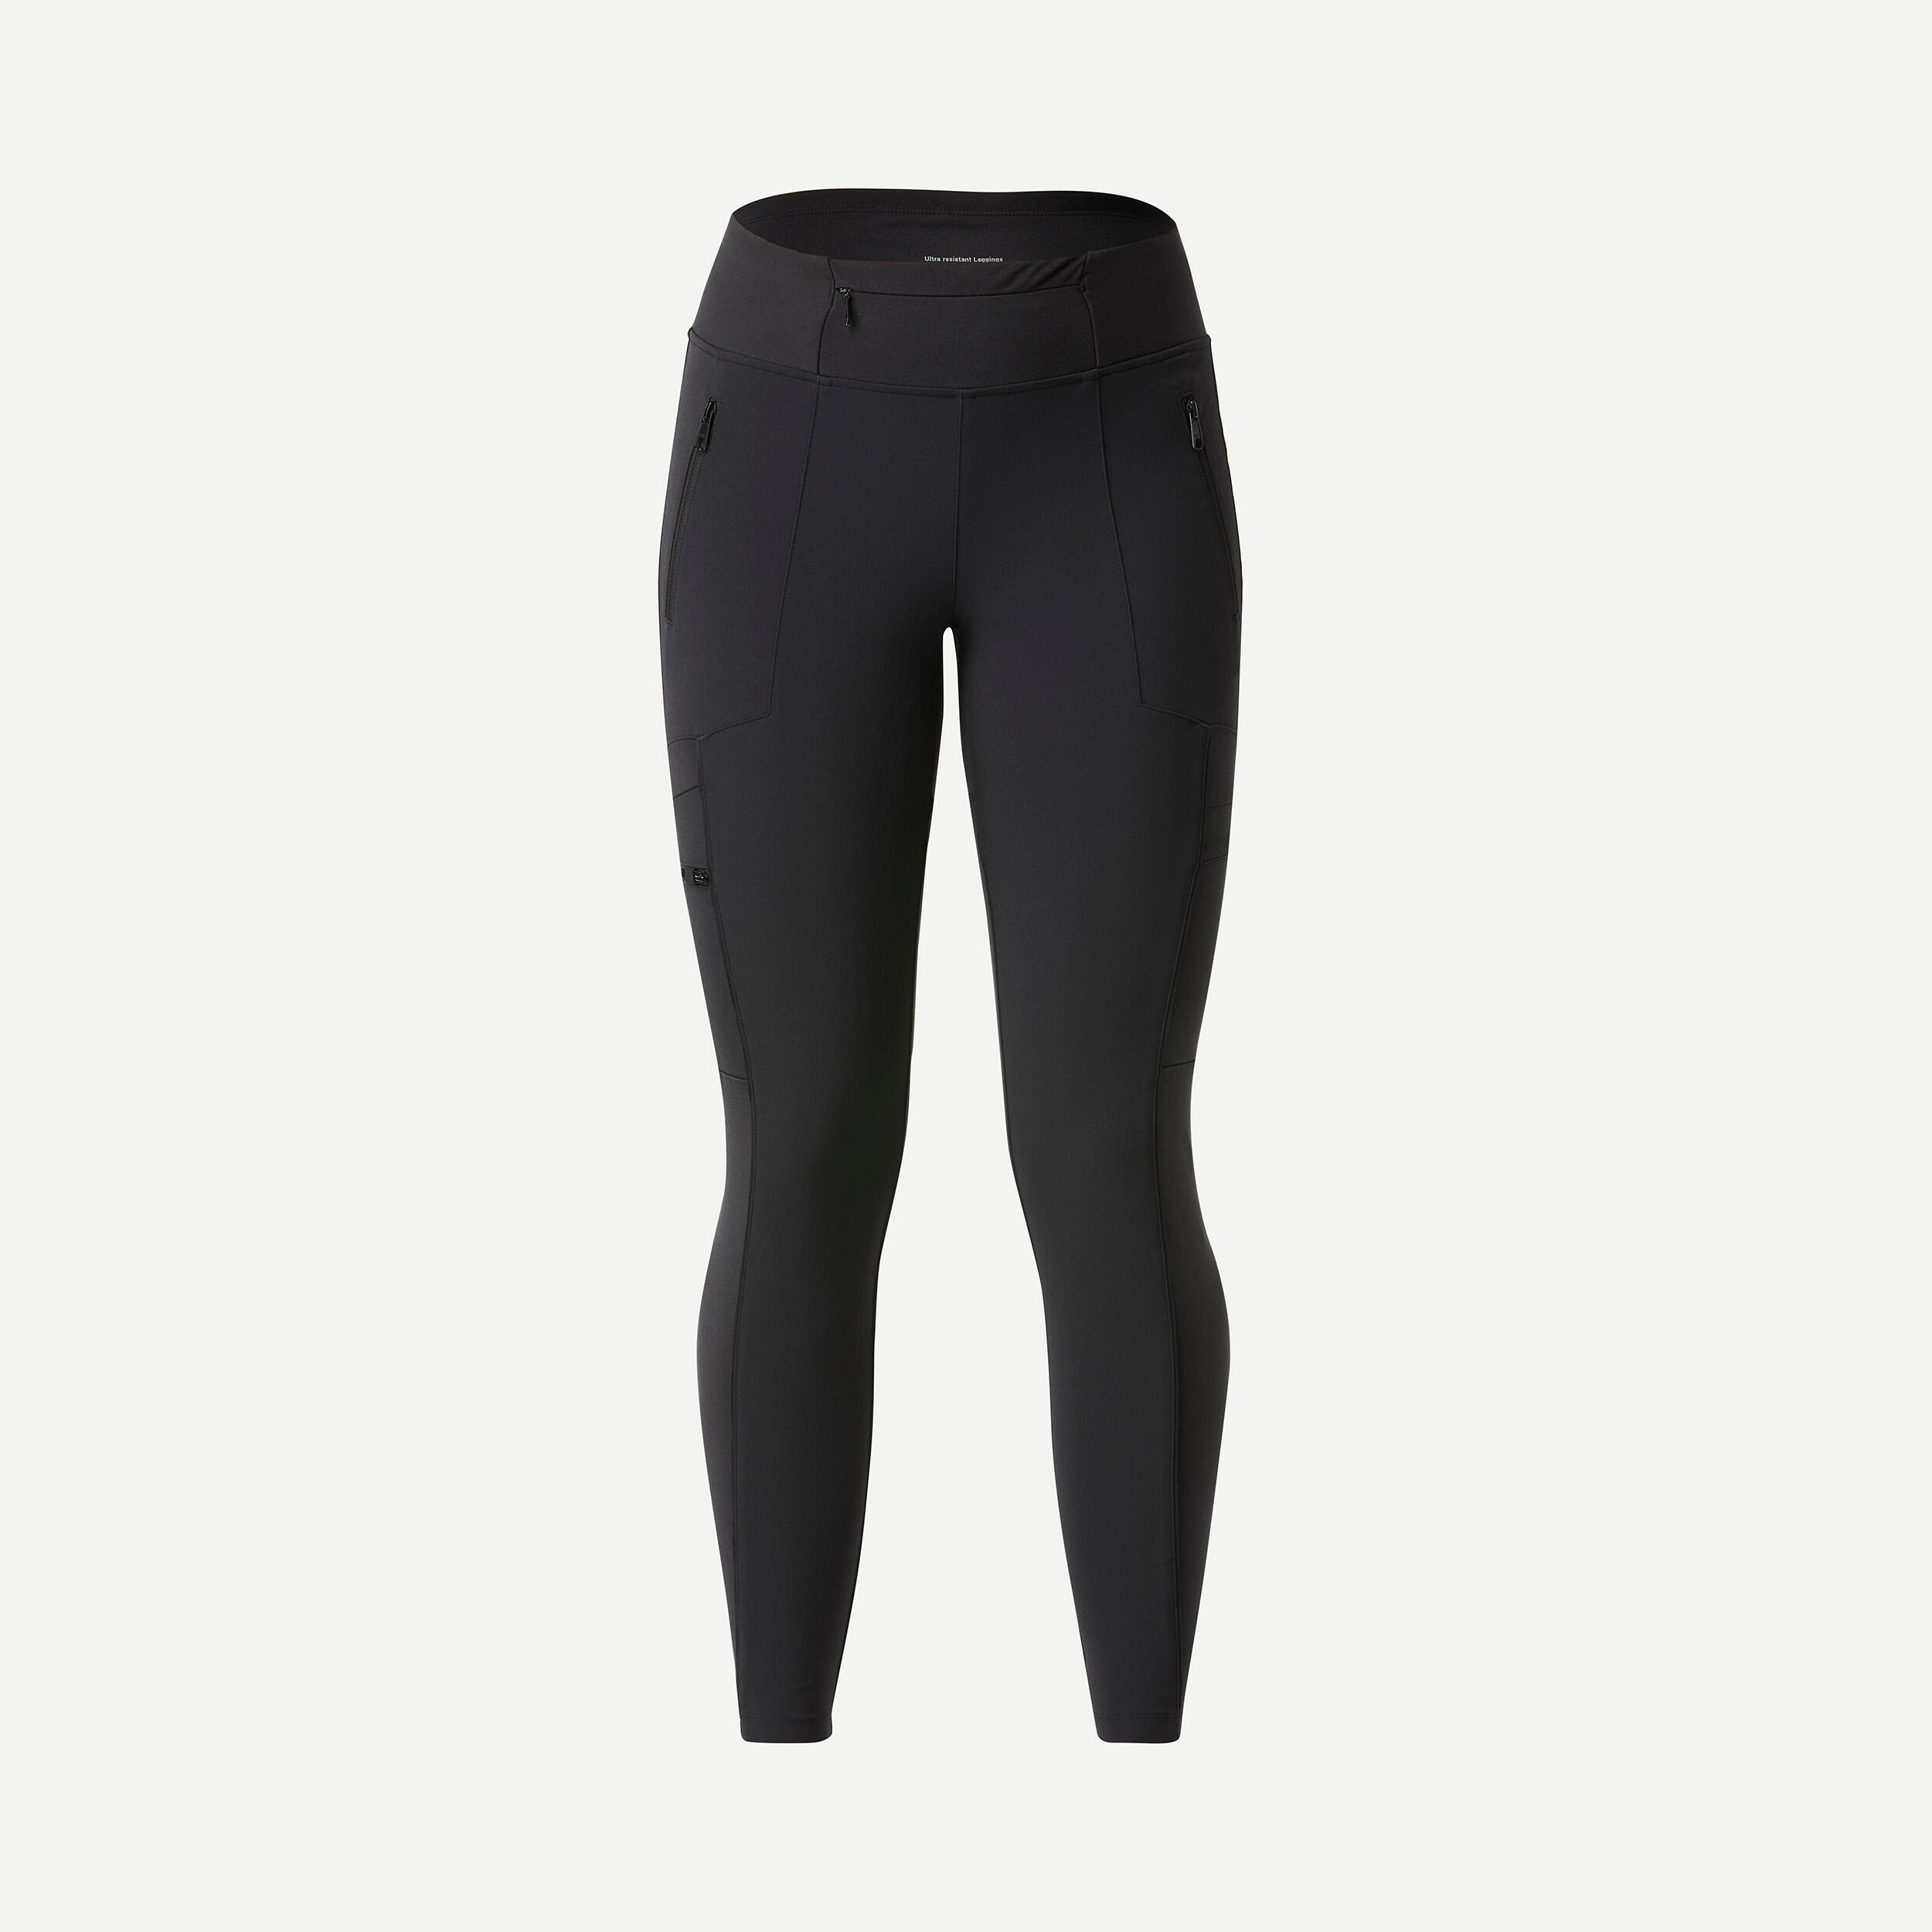 Women’s Warm Pants - SH 500 Black